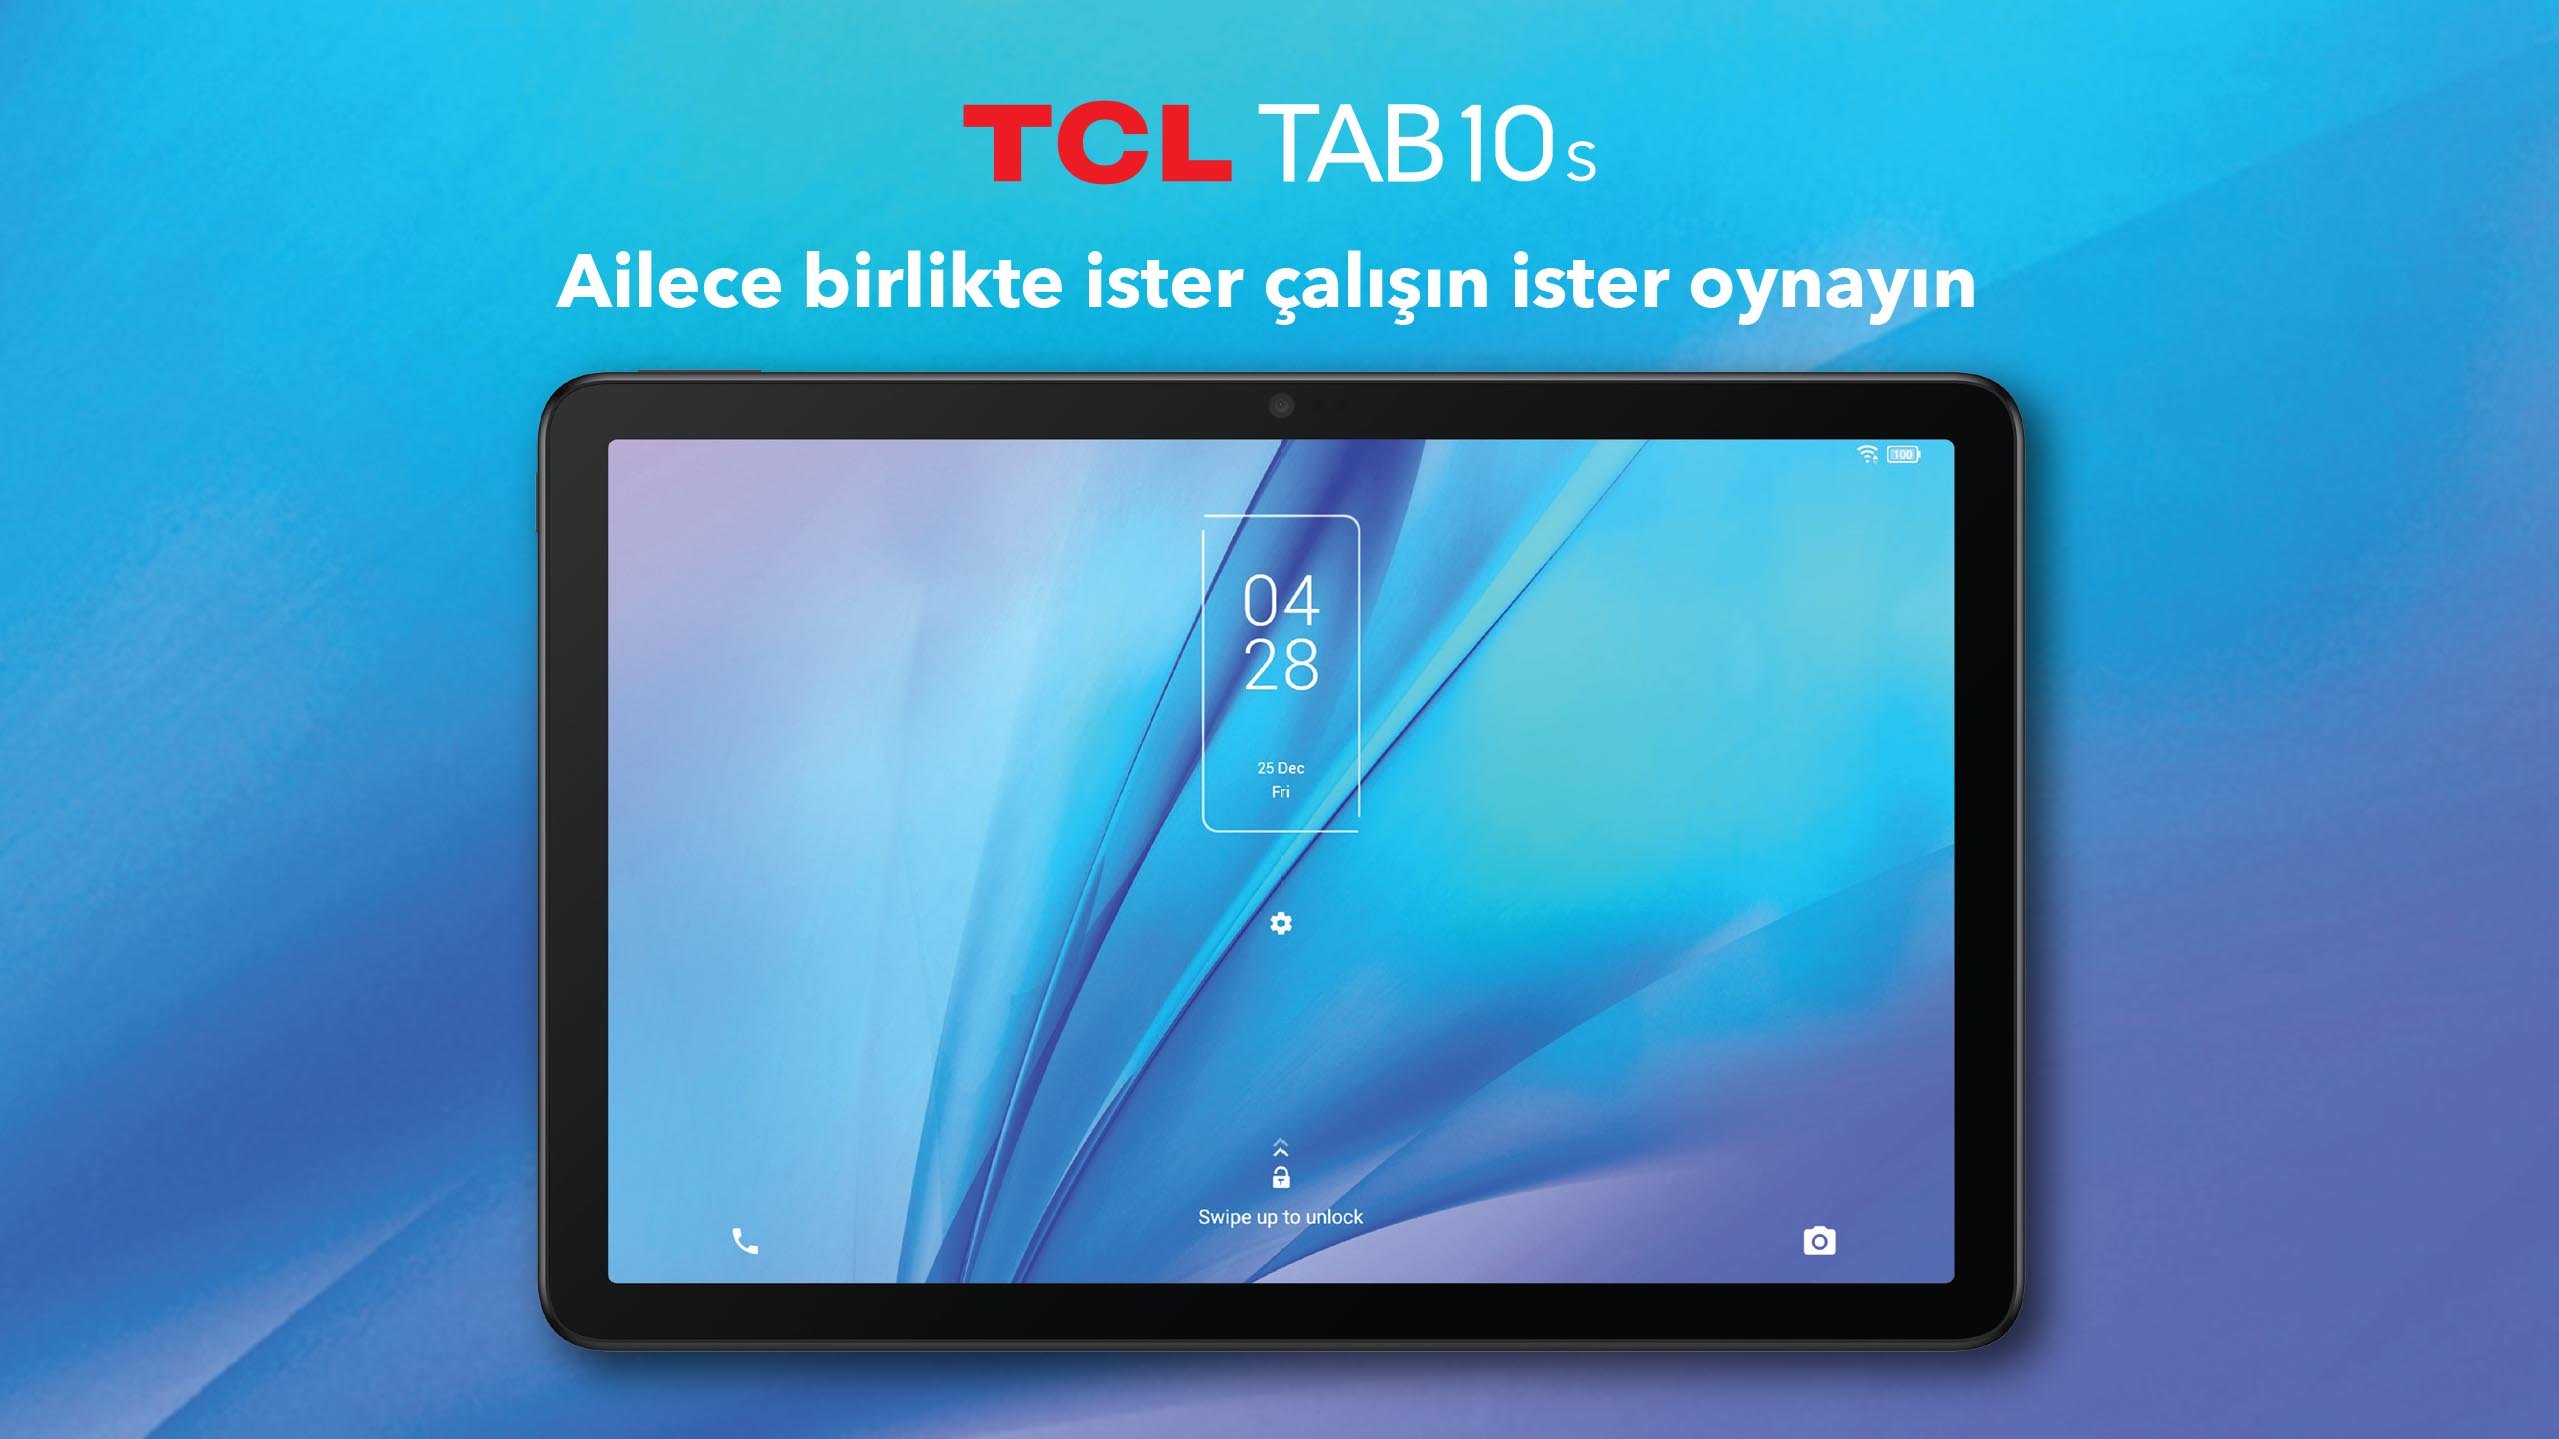 TCL Tab 10s 10.1 inc 32 Gb Tablet TCL TAB 10 S WiFi, 8 saat boyunca video oynatabiliyor ve 2 hafta boyunca bekleme modunda durabiliyor. Cihaz, bu özellikleri sayesinde uzaktan eğitim alan öğrenciler için uygun bir seçenek olma niteliği taşıyor.